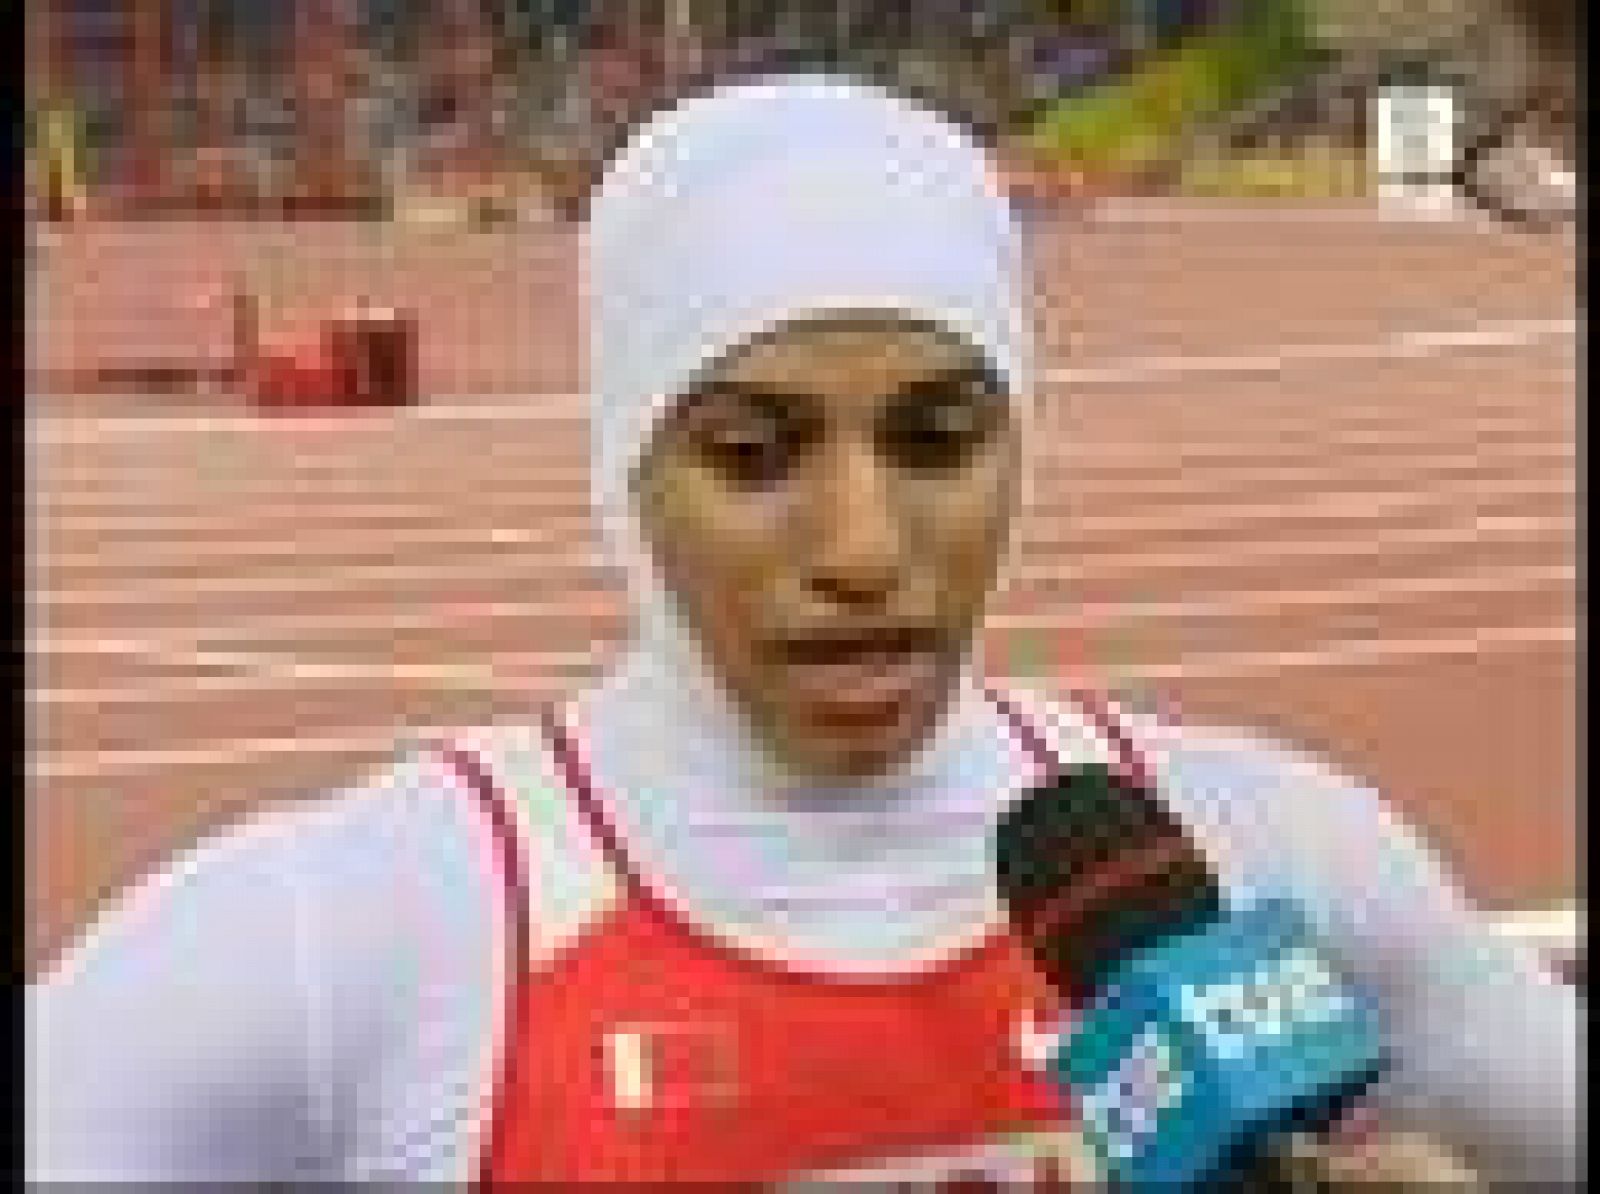   La bahrainí Al-gassra se cuela en las semifinales de los 200 metros con todo el cuerpo cubierto de acuerdo con la religión que profesa.